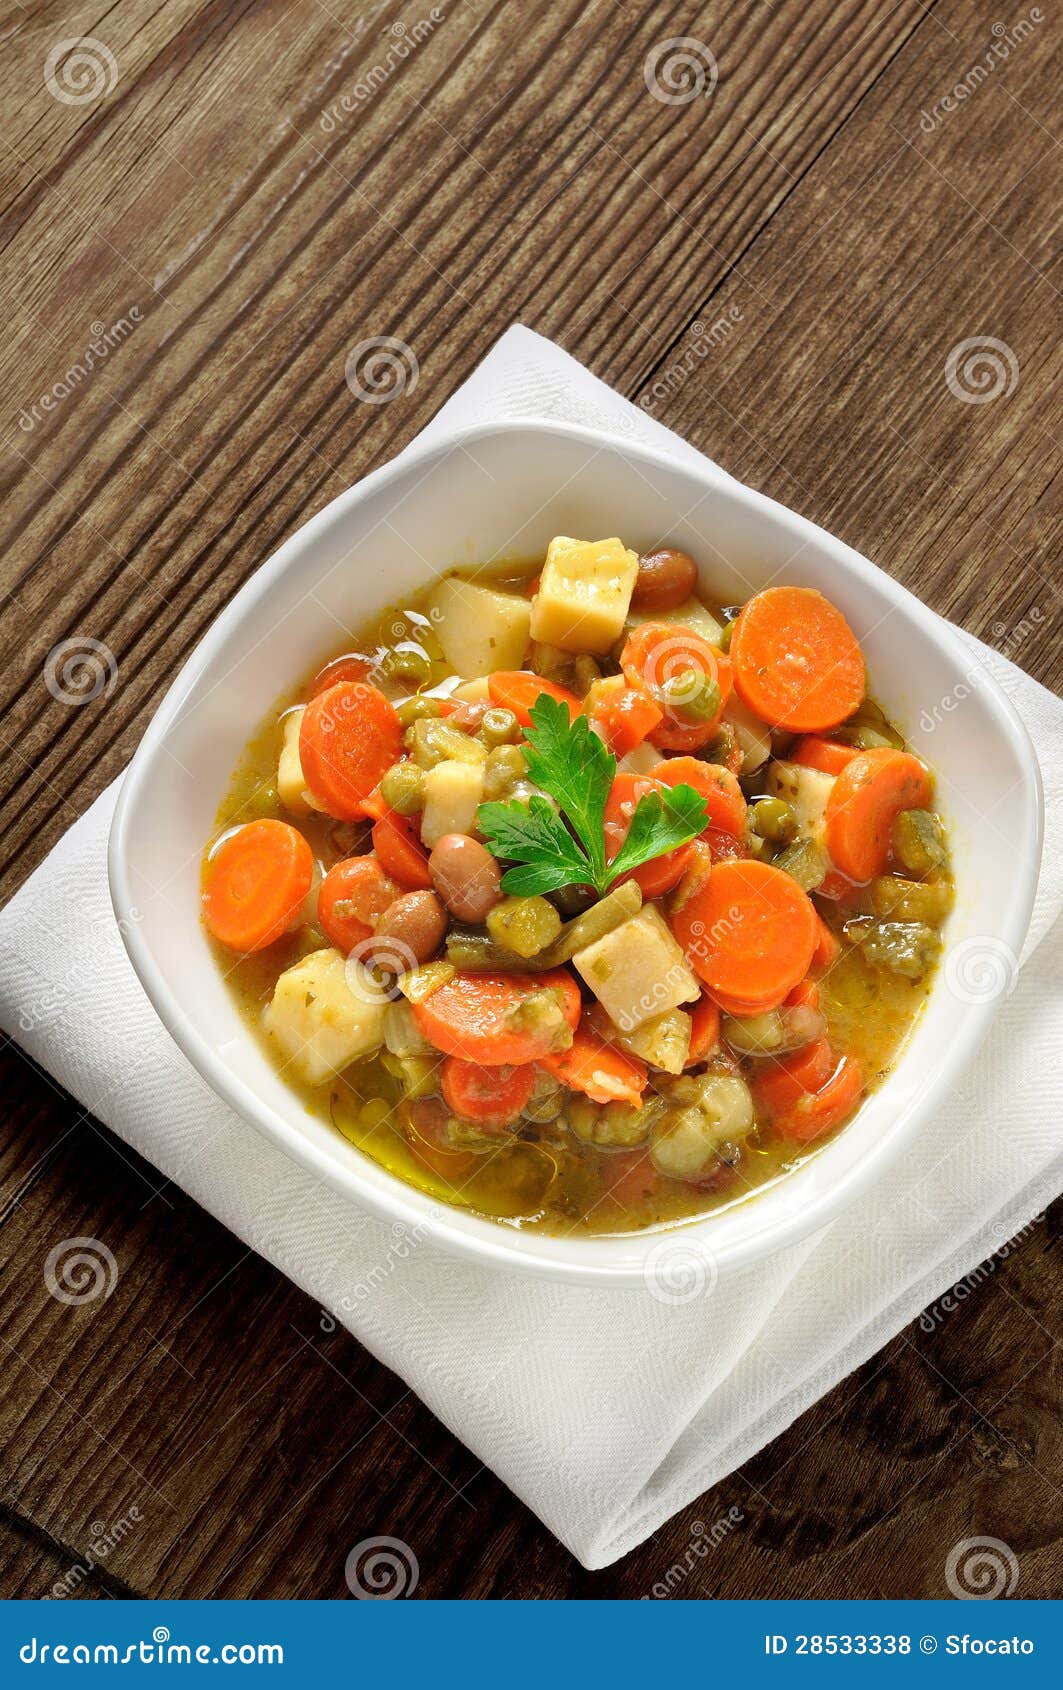 在白色碗的健康汤用红萝卜、土豆和荷兰芹 库存图片. 图片 包括有 新鲜, 罗马尼亚语, 烹调, 草本, 宏指令 - 115223613